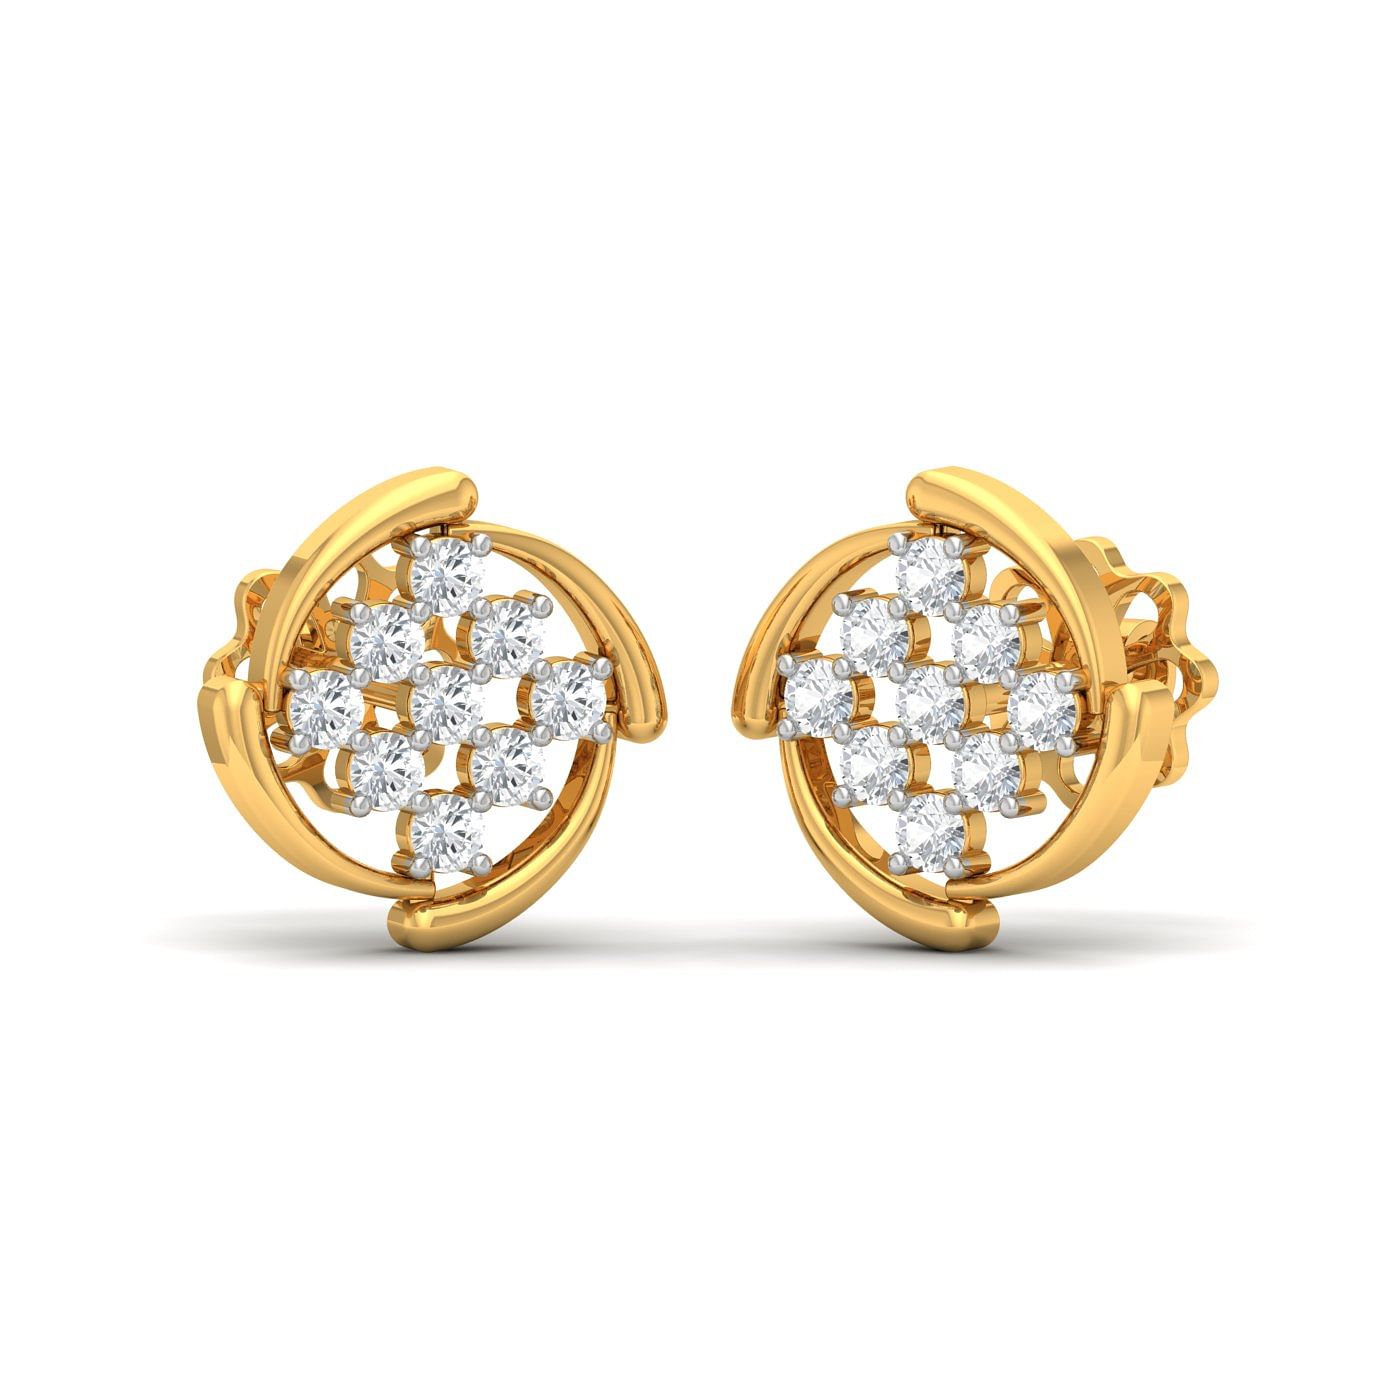 buy real diamond yellow gold stud earring set